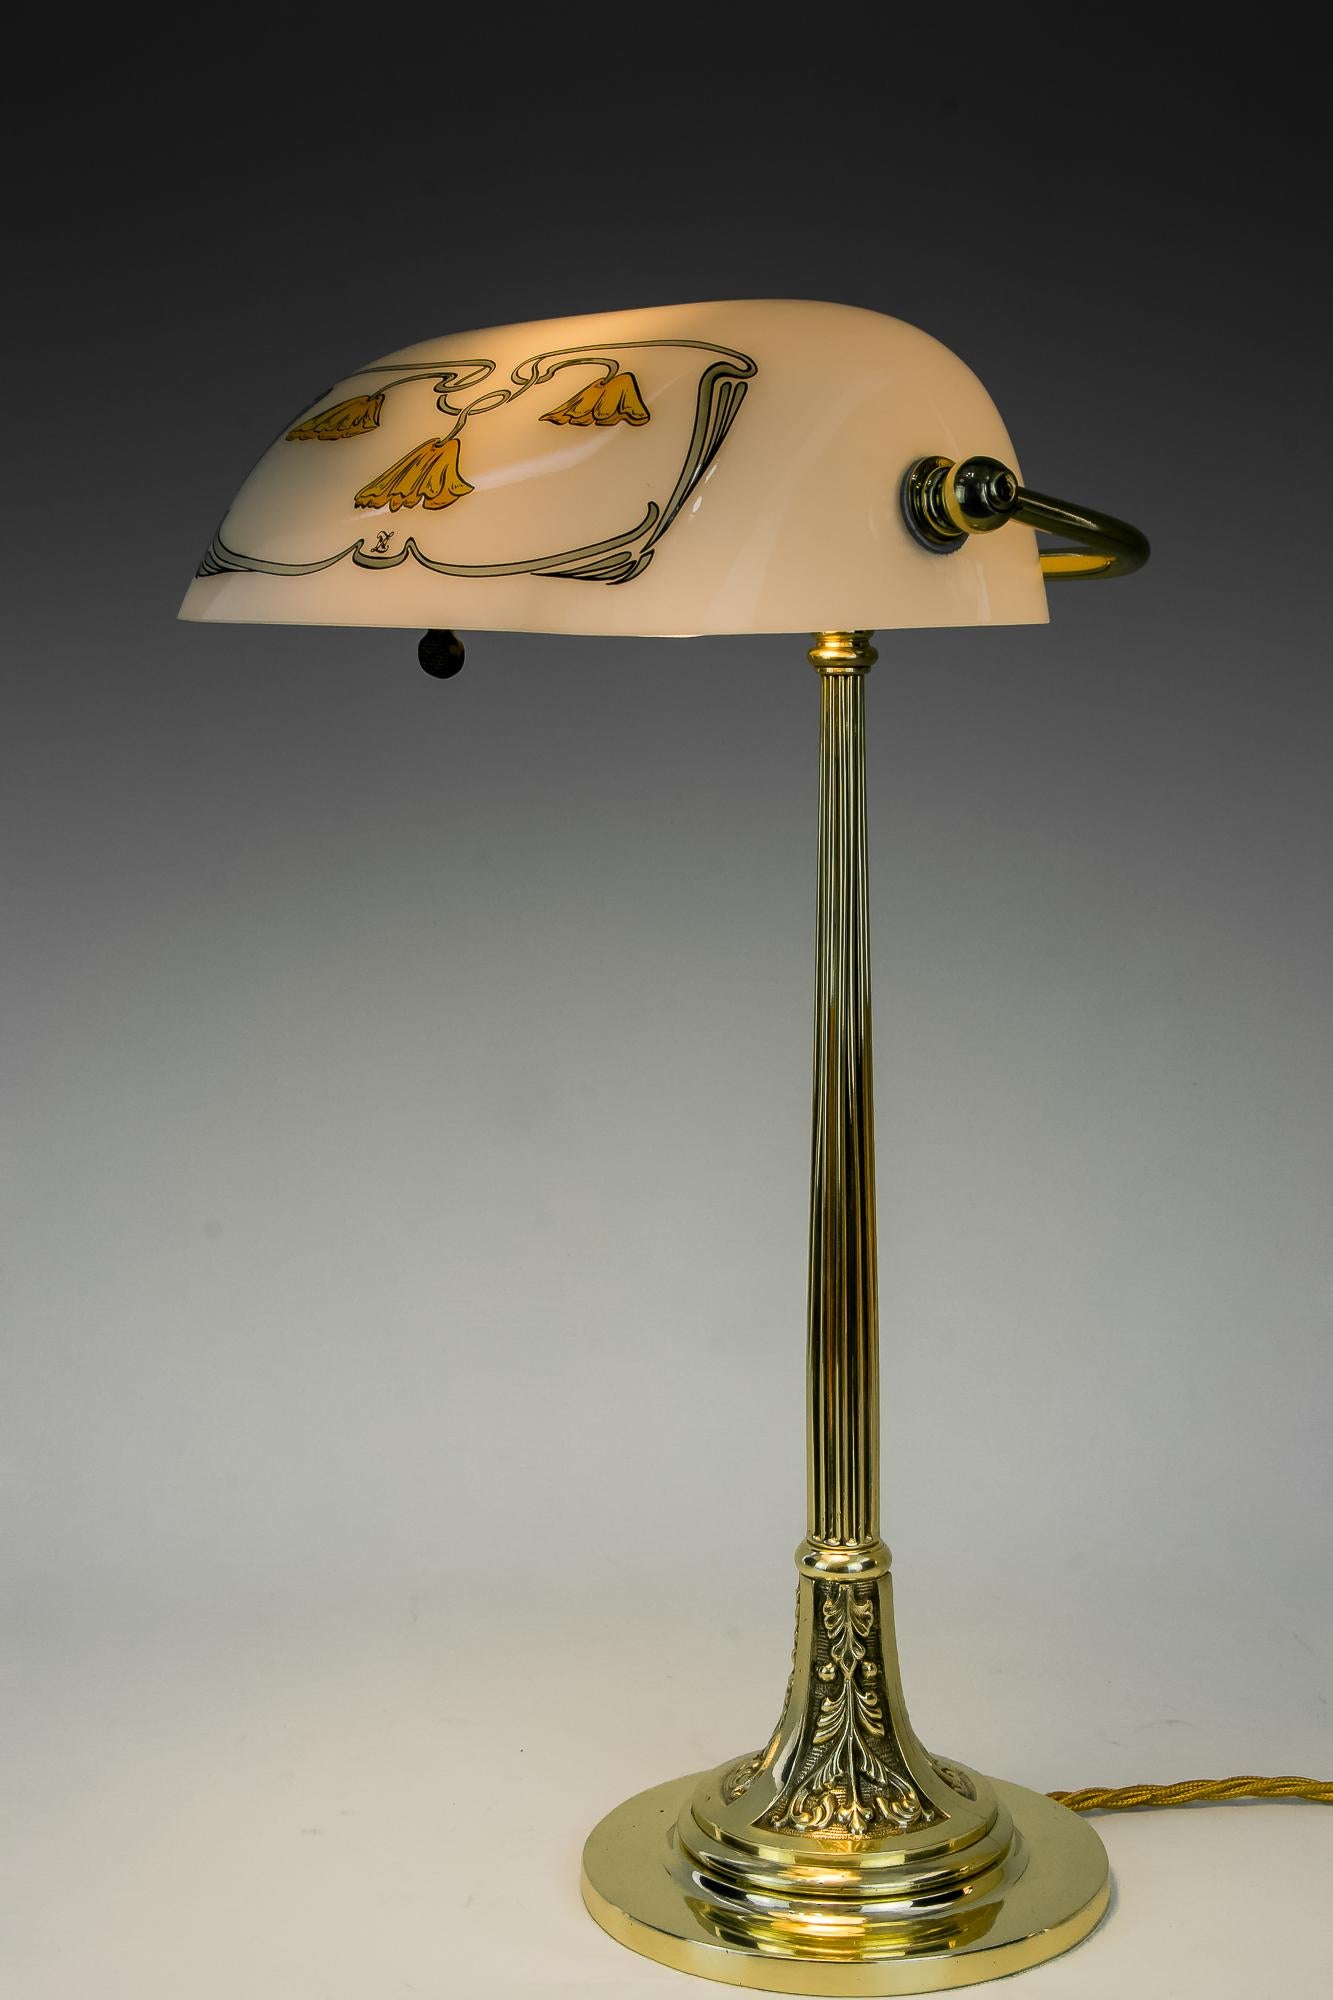 Jugendstil-Tischlampe mit neuem Glasschirm, Wien, um 1908.
Messing poliert und einbrennlackiert.